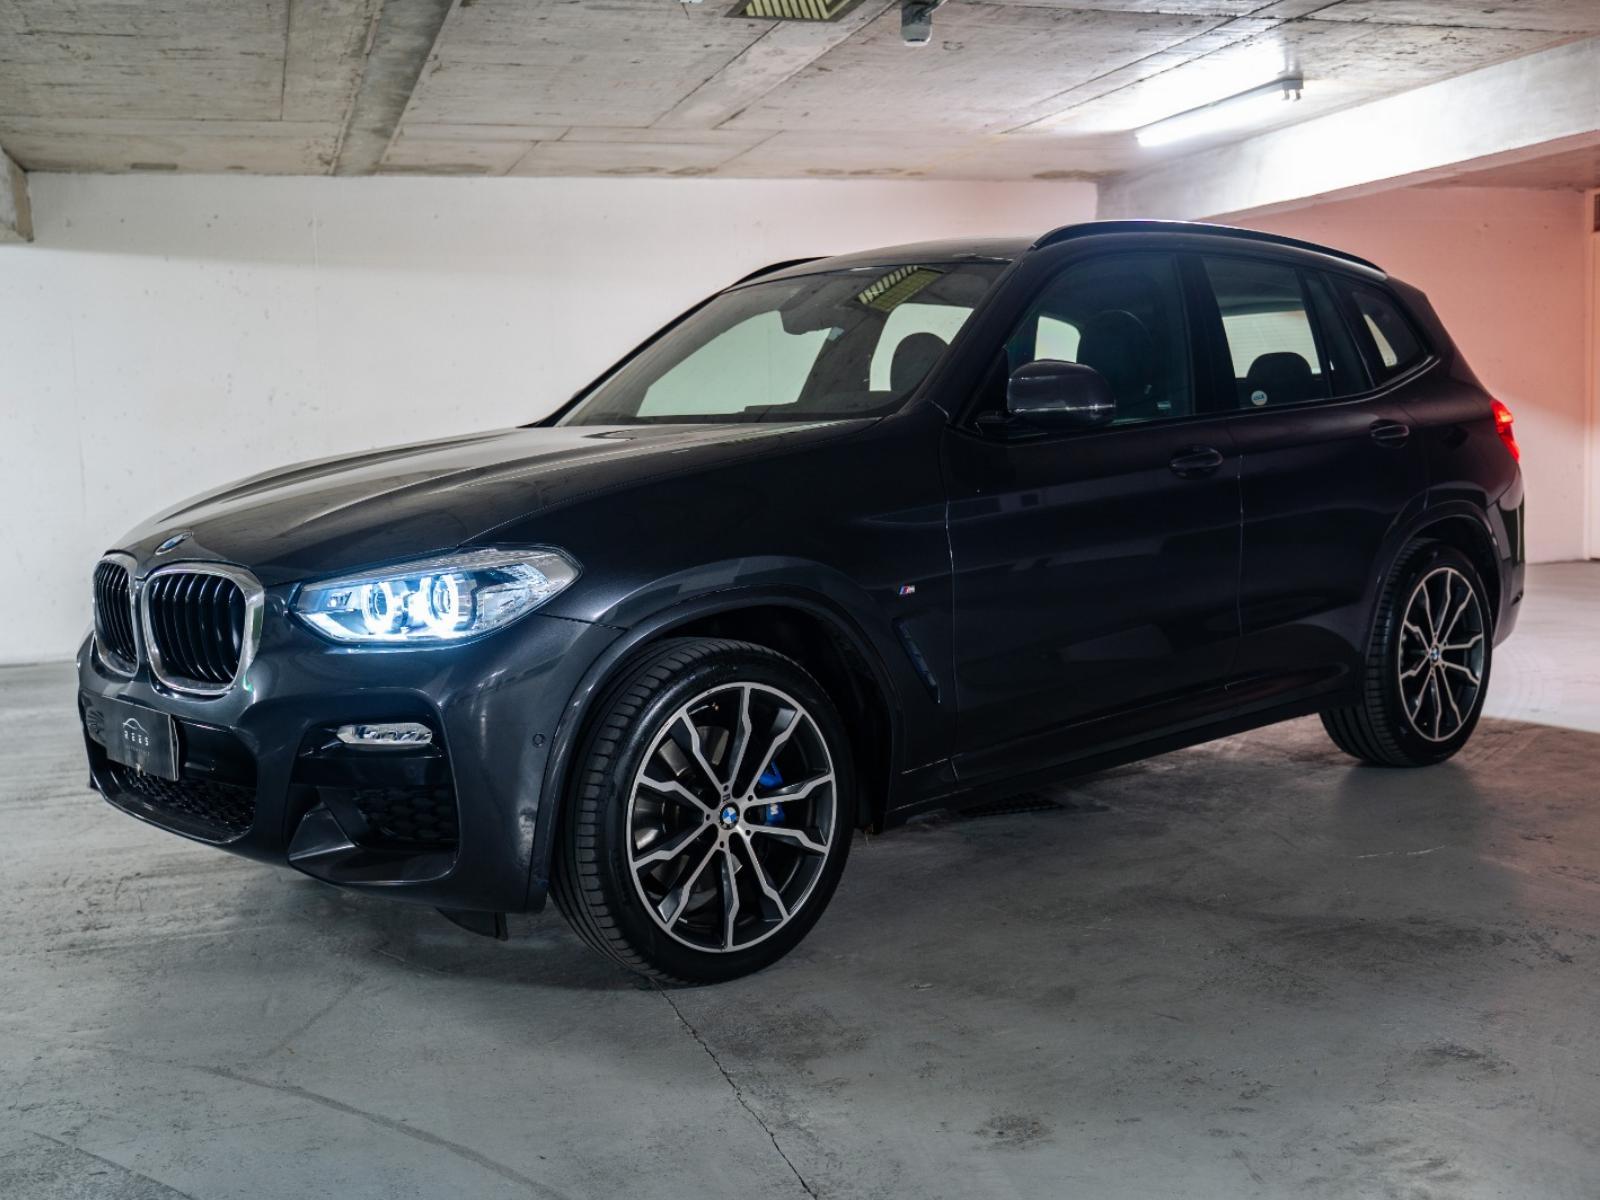 BMW X3 M Sport 2019 2.0 LTS - 184 HP - 